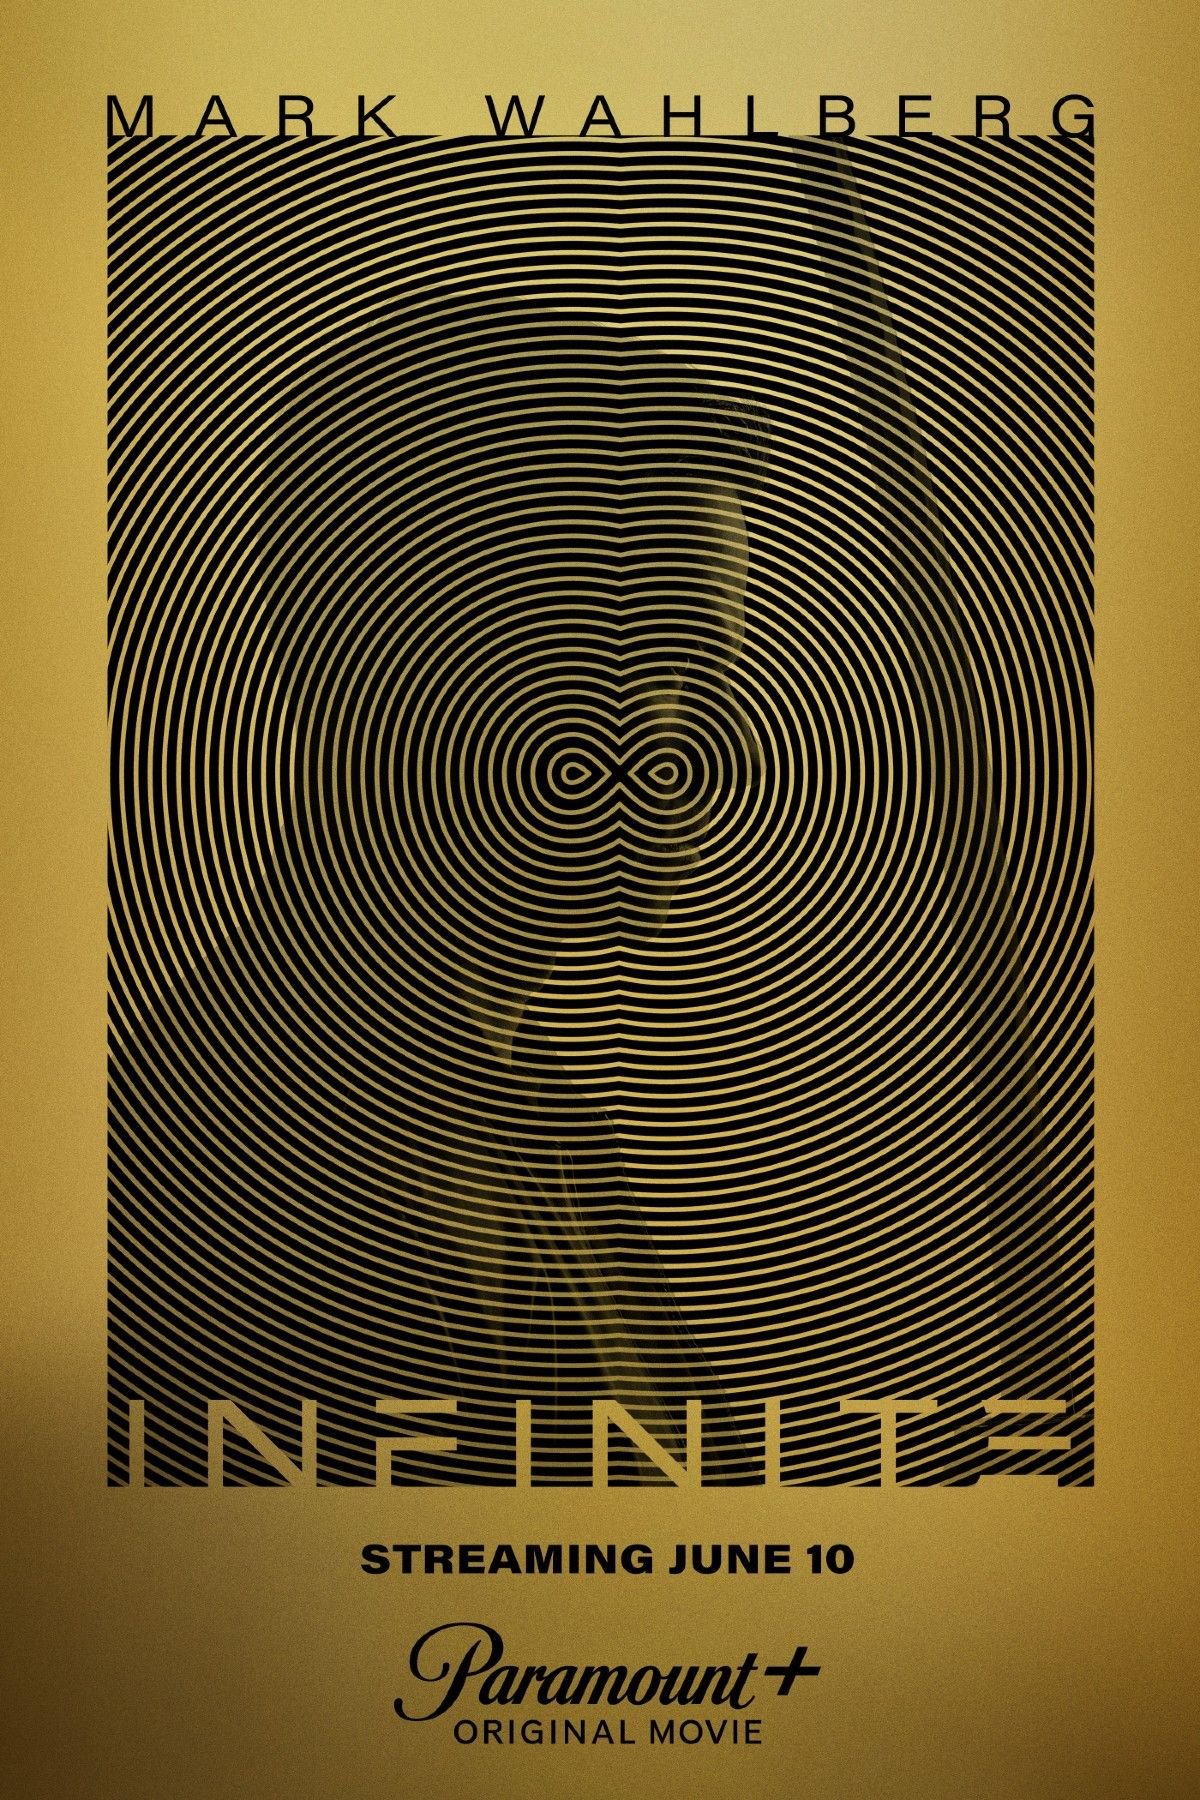 INFINITE | Parmount Plus divulga o segundo trailer da ação de ficção científica com Mark Wahlberg e Chiwetel Ejiofor